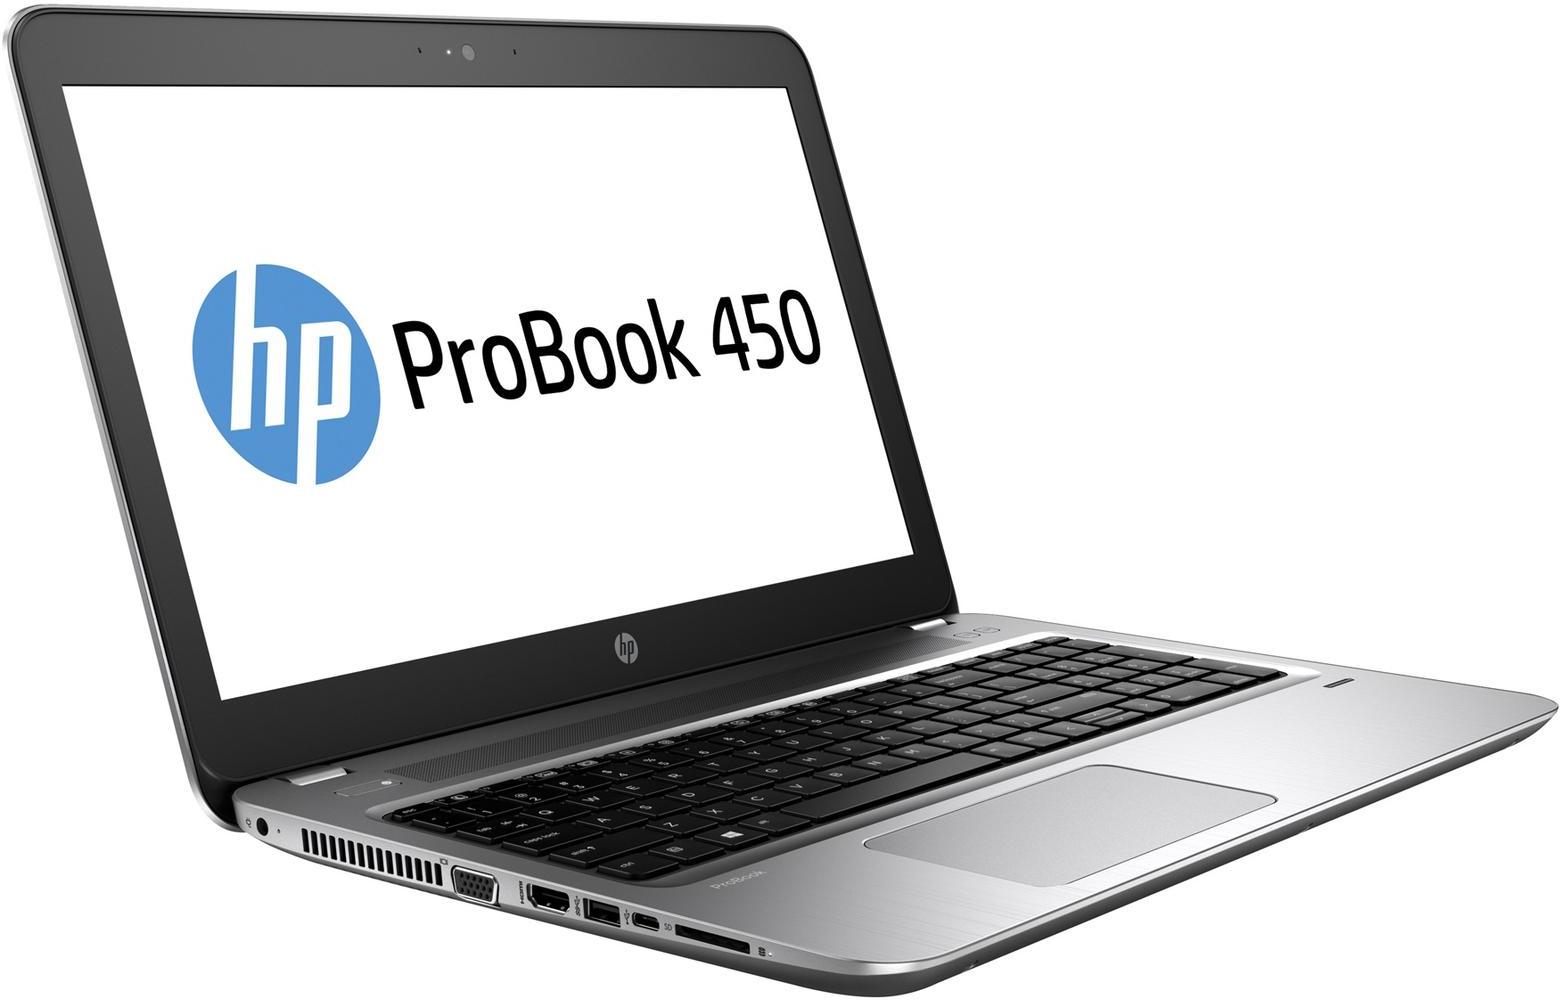   HP Probook 450 G4 (Y8B26EA)  1